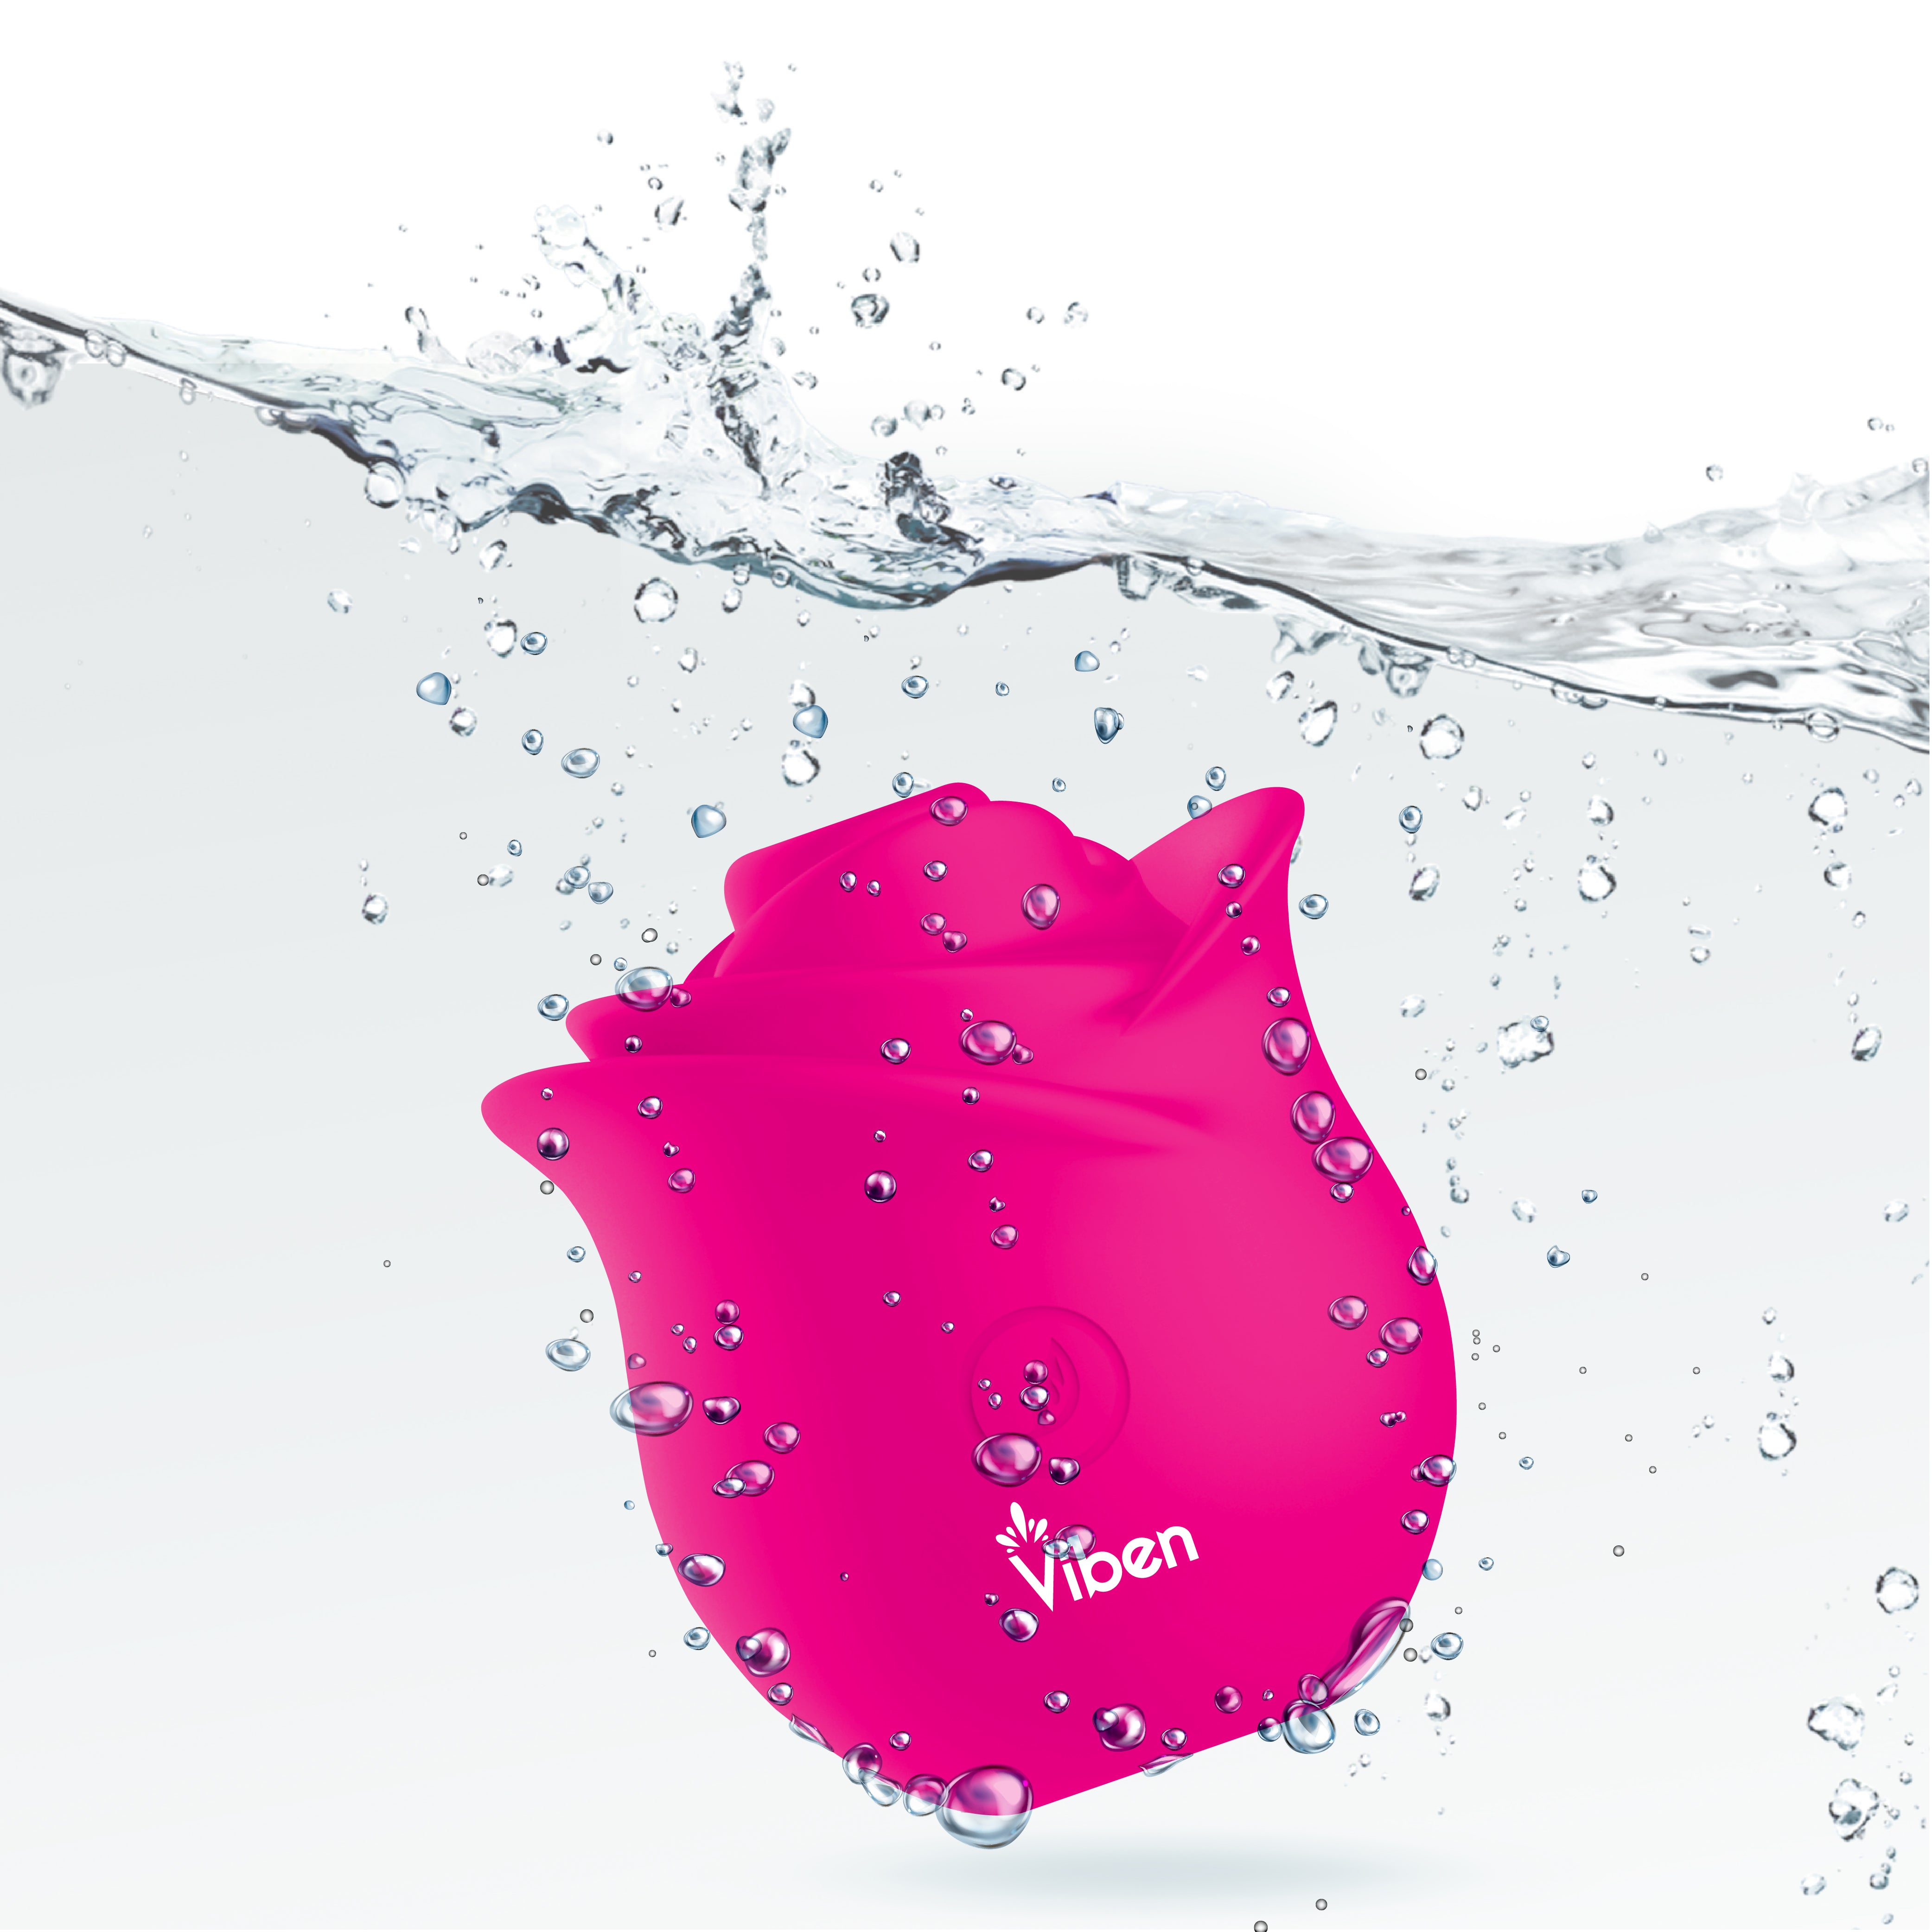 Zen Rose - Hot Pink - Handheld Rose Clitoral and Nipple Stimulator - Presale Only-6